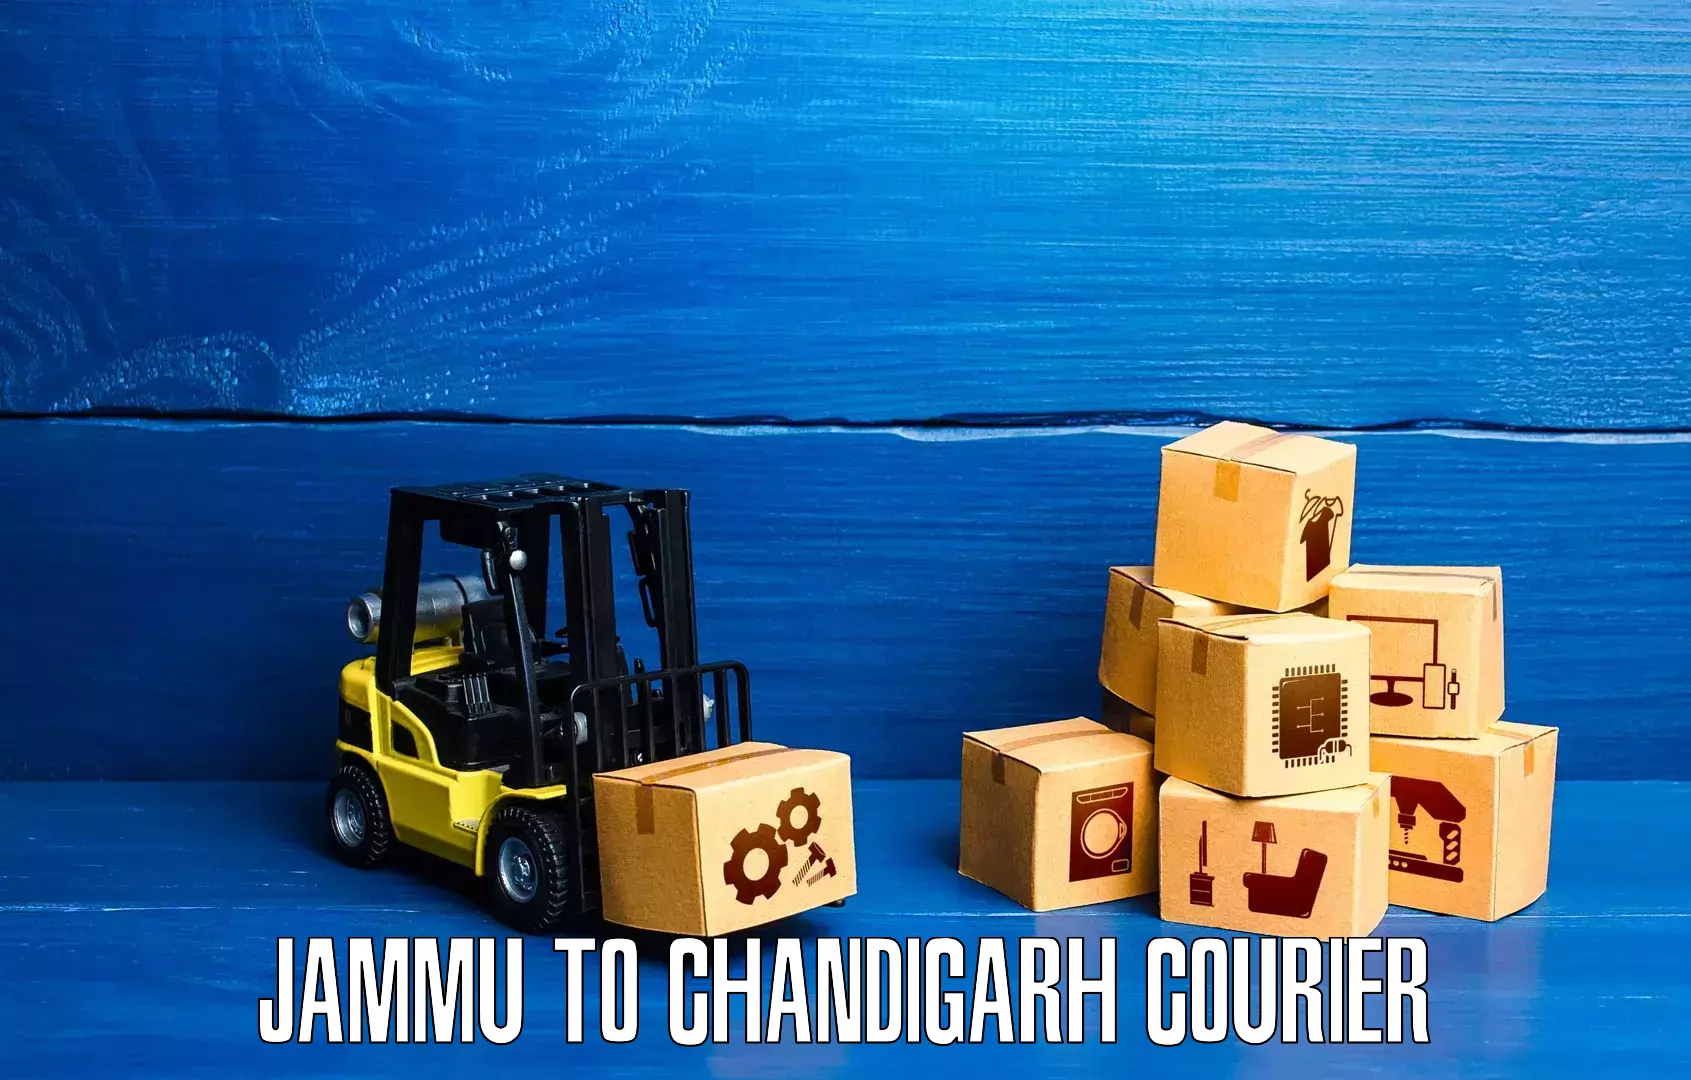 Advanced shipping technology Jammu to Chandigarh